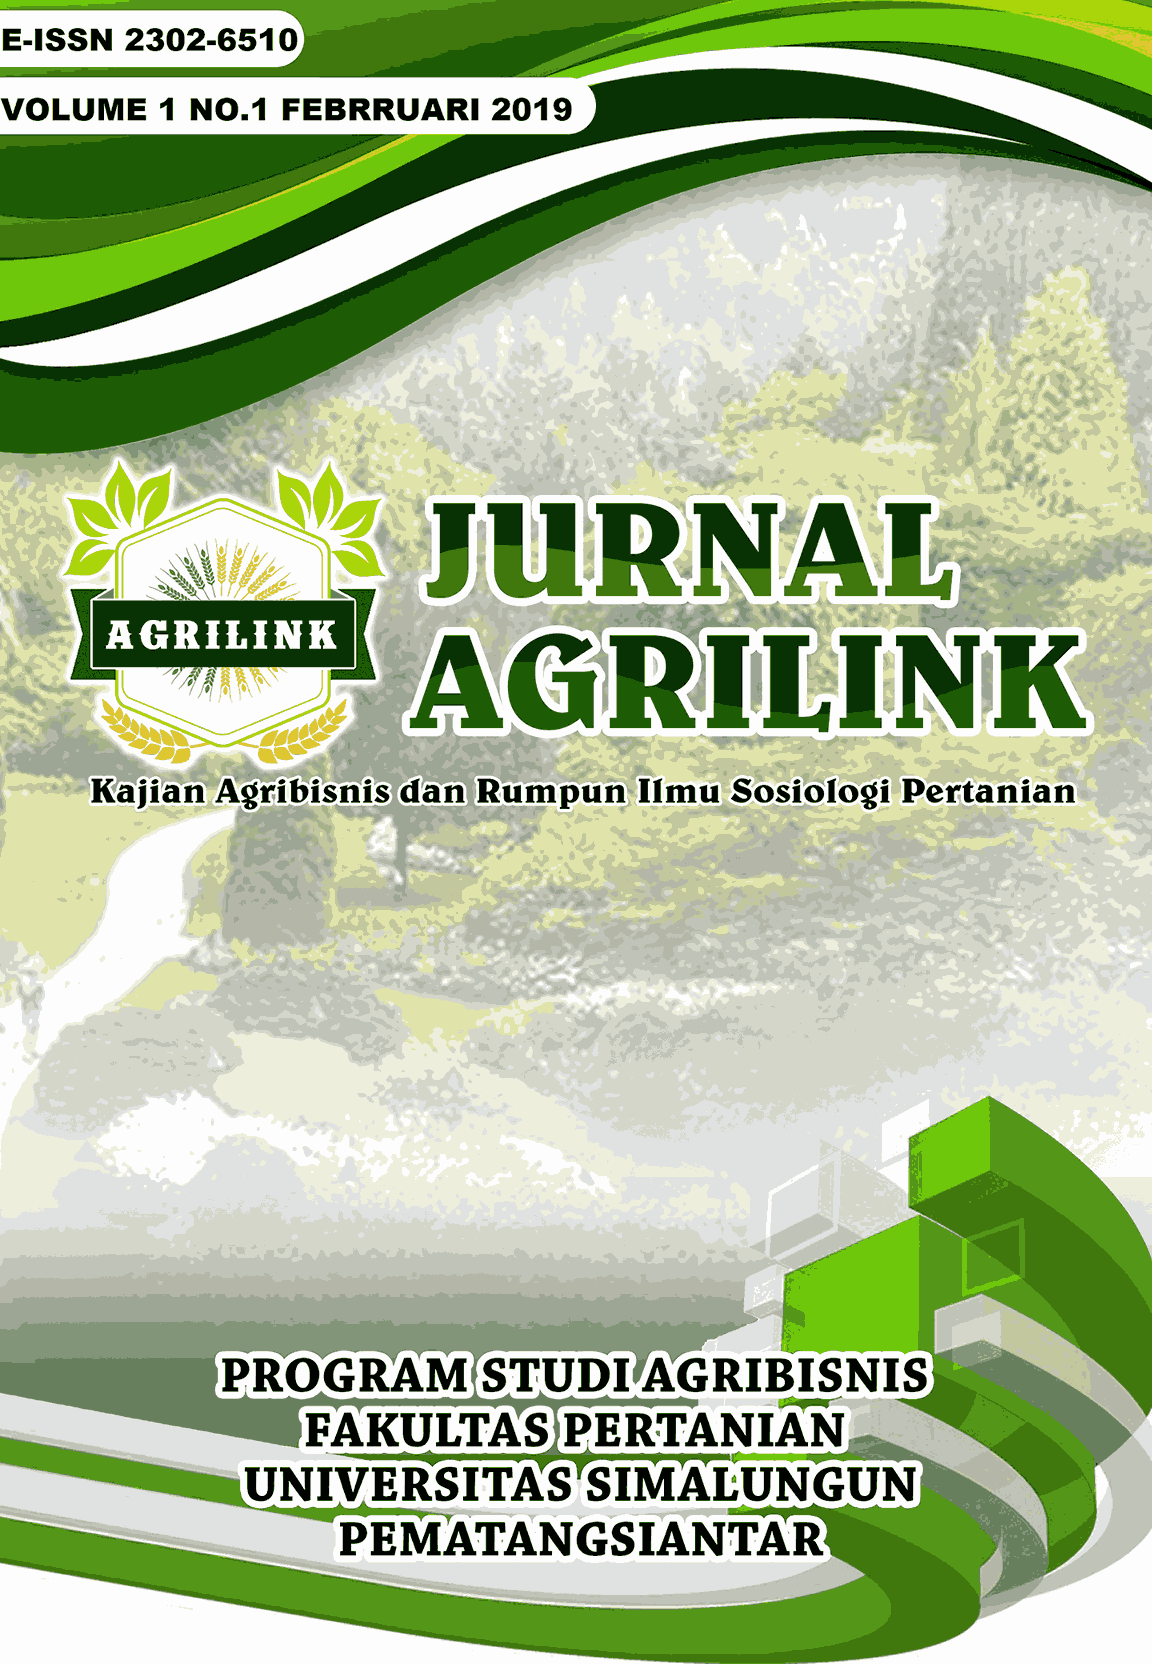 					View Vol. 1 No. 1 (2019): Jurnal Agrilink Vol 1 No 1 Februari 2019
				